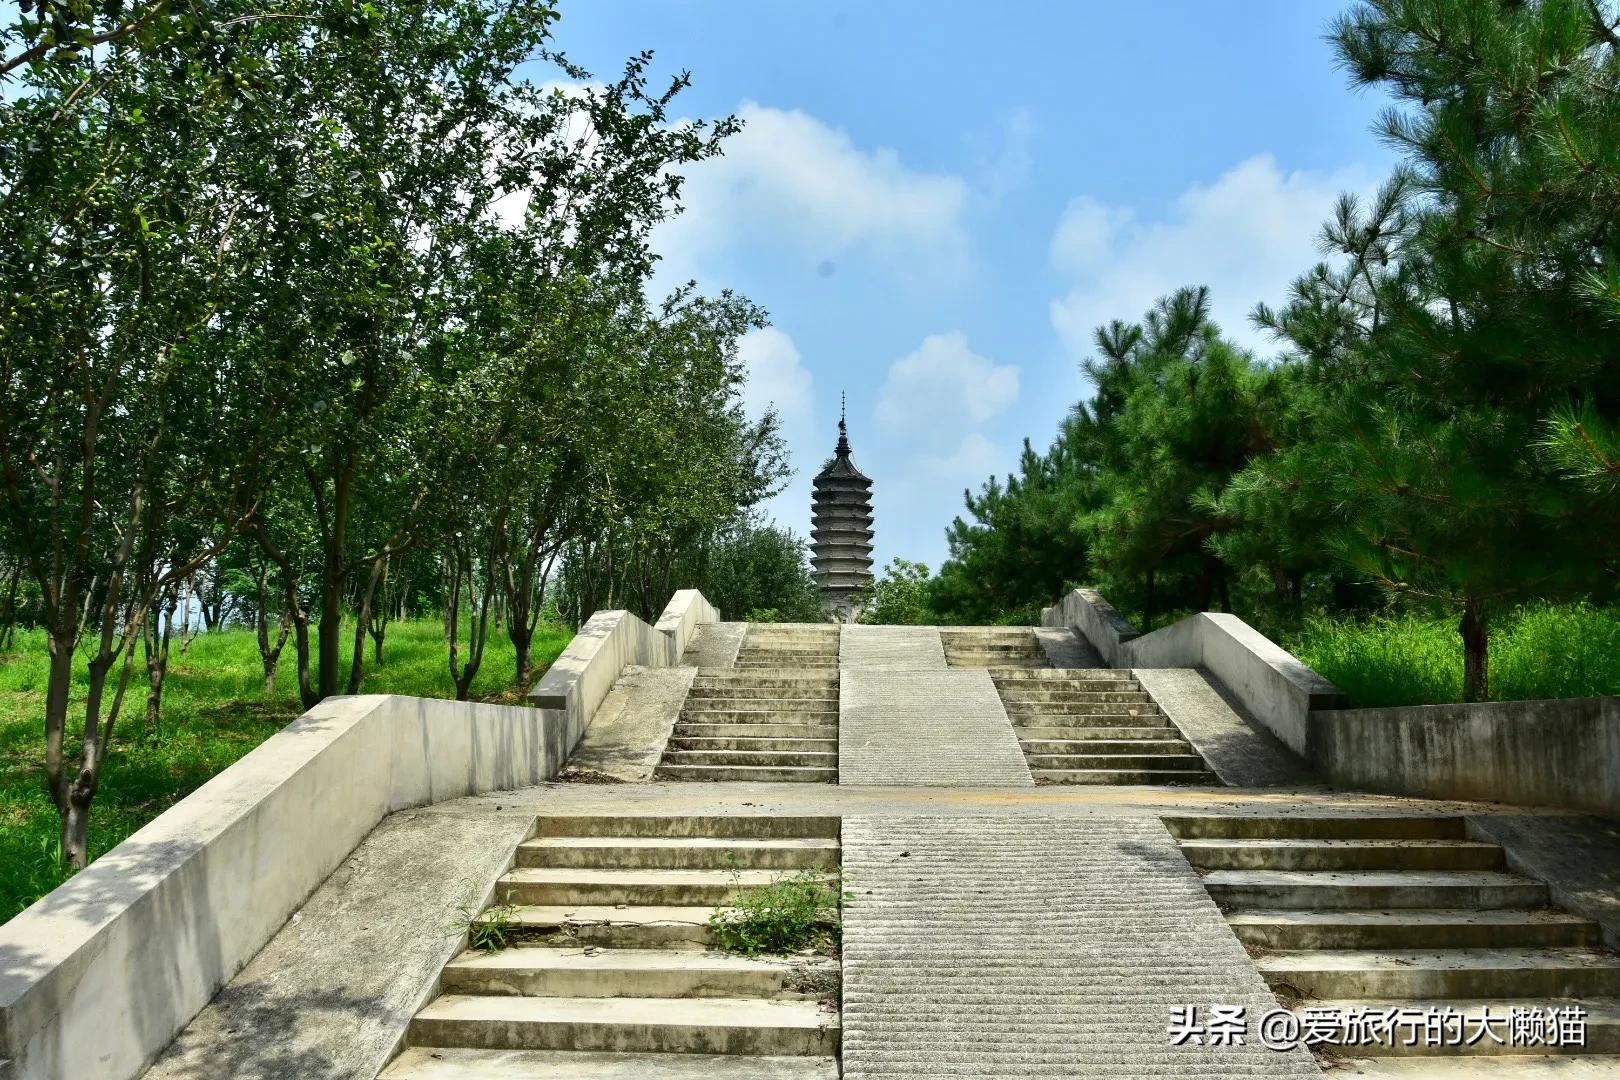 明代第一邪僧，被称为“黑衣宰相”的姚广孝的墓塔就在北京房山